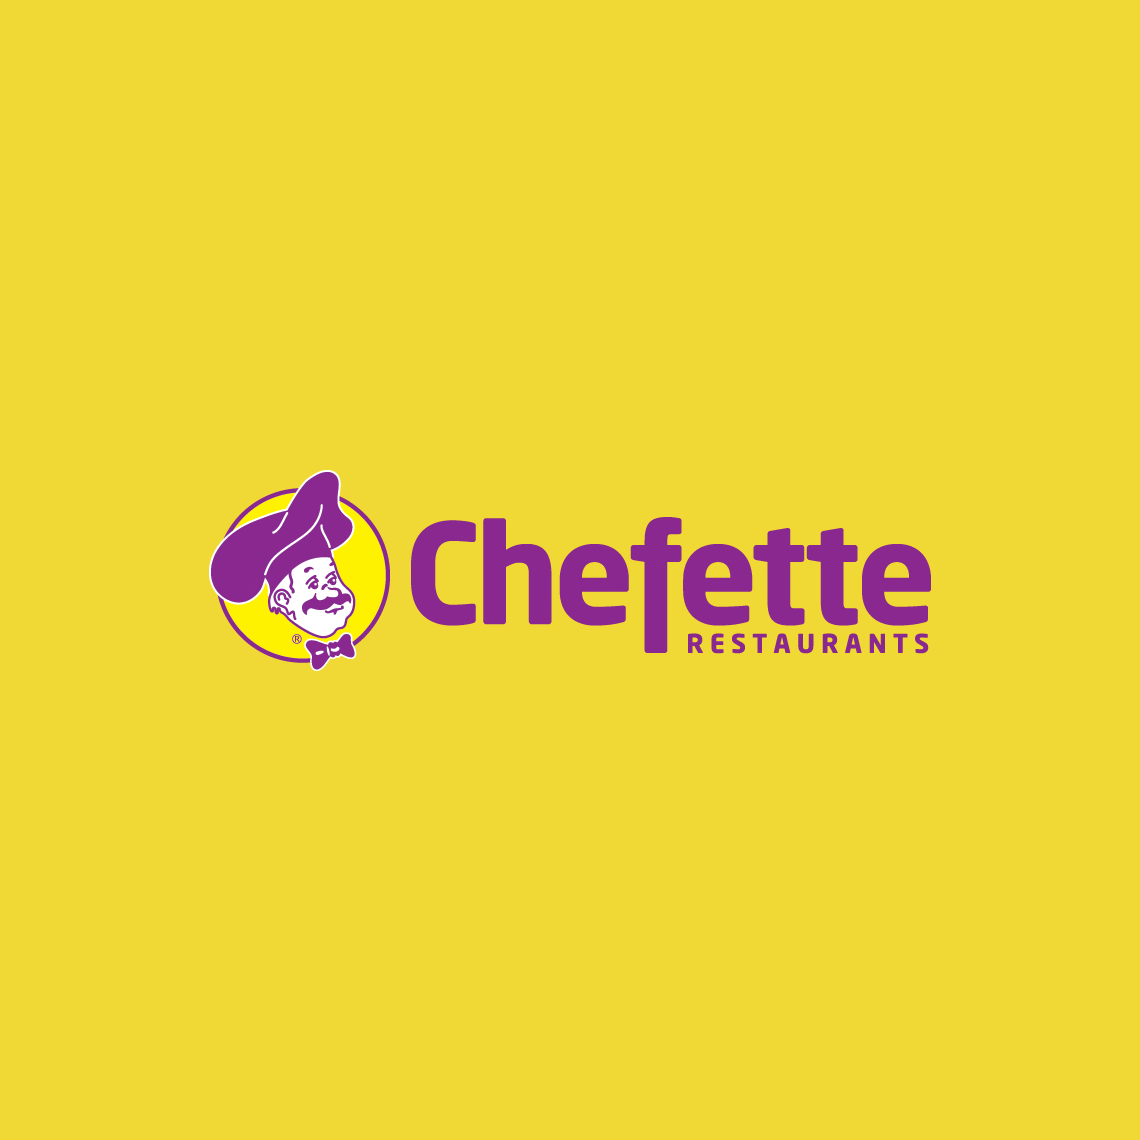 Chefette Restaurants Ltd